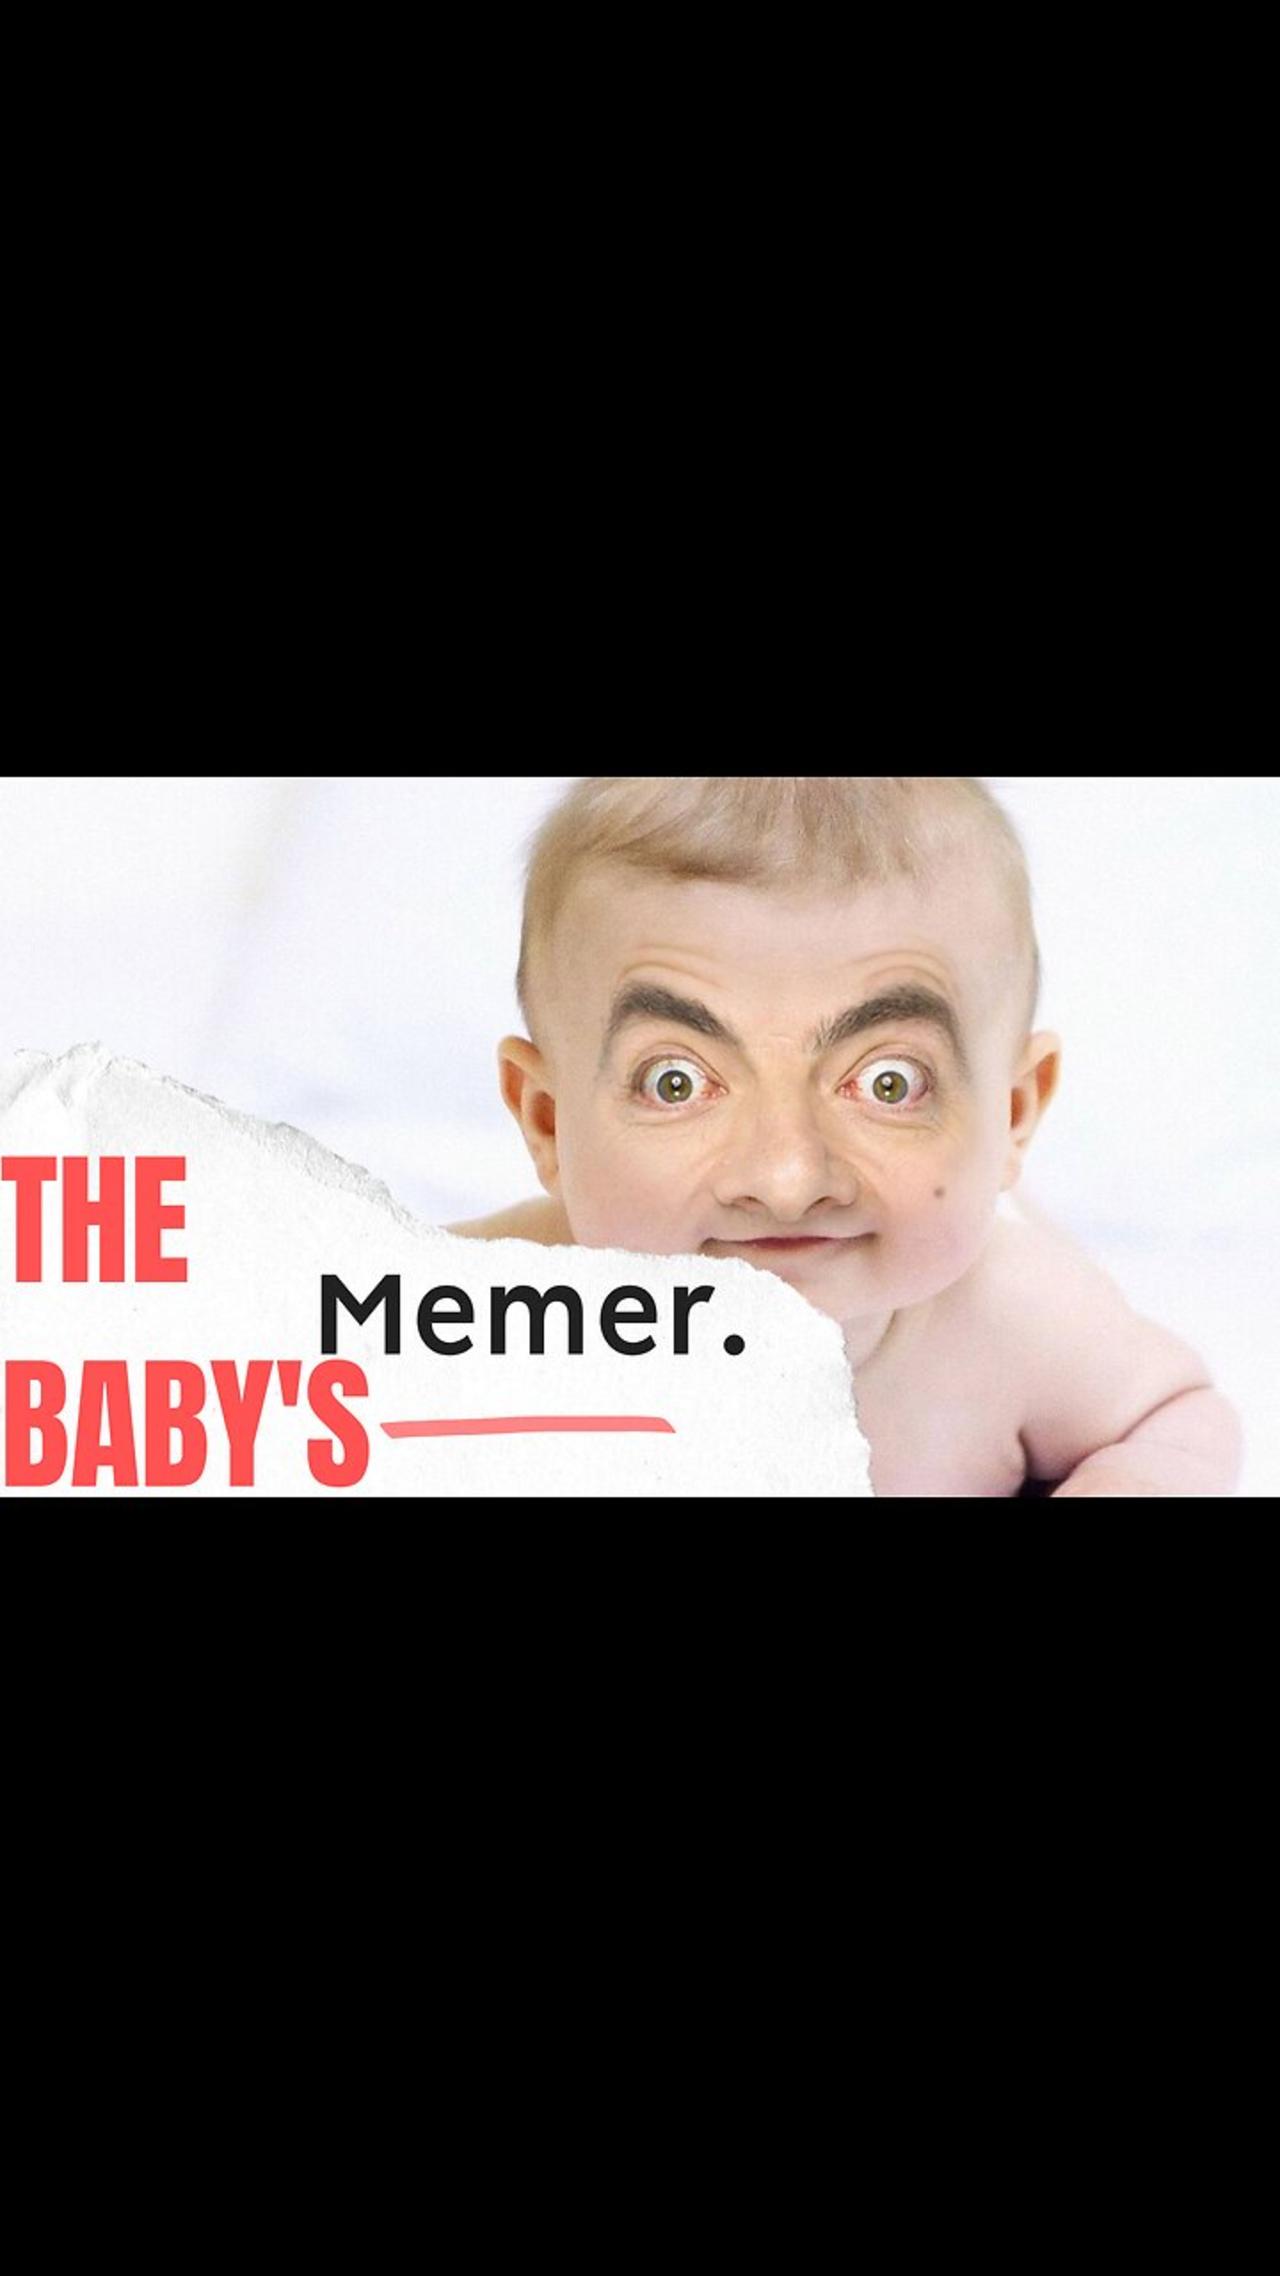 The memer.